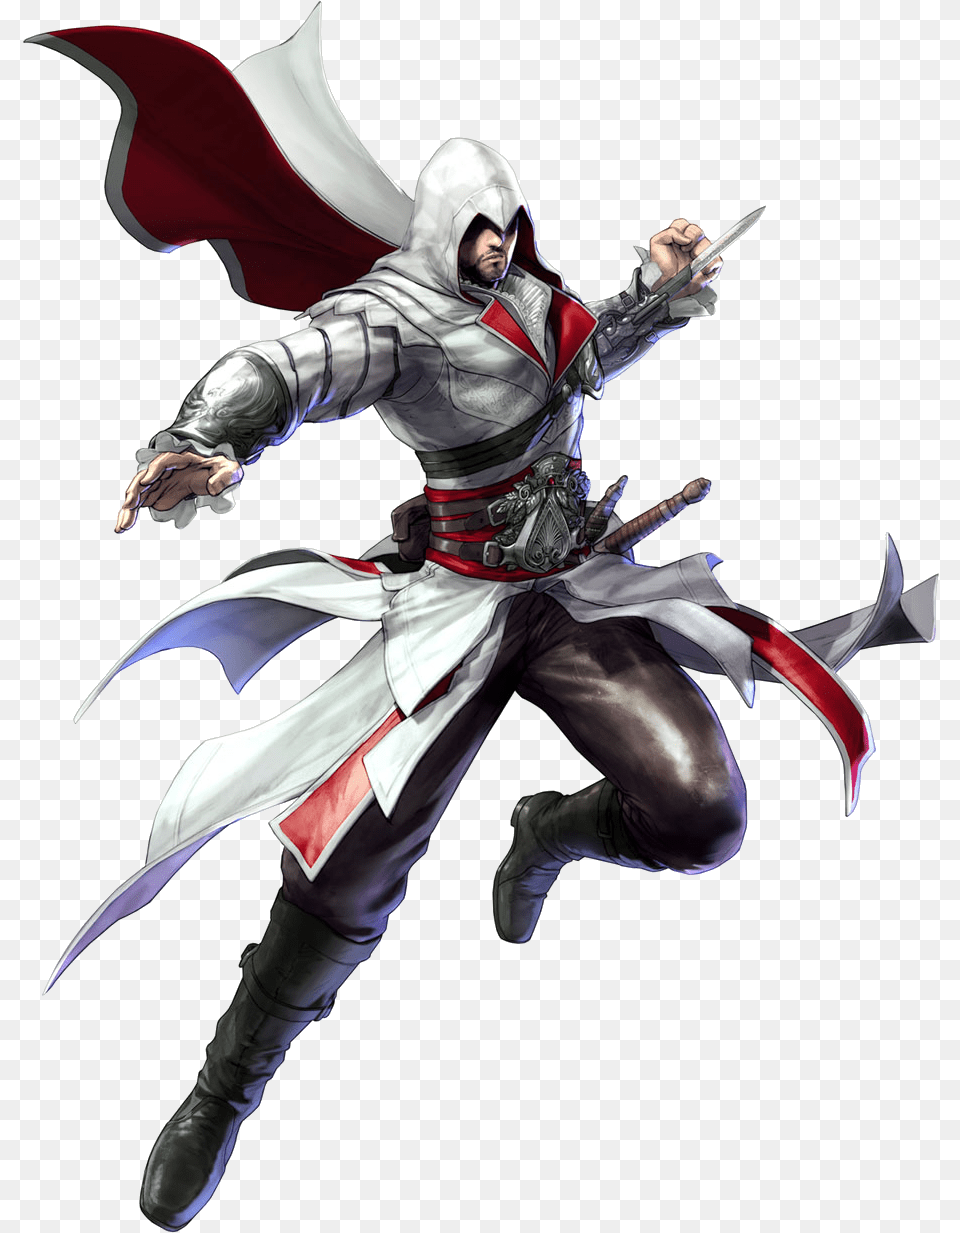 Ezio Auditore Da Firenze, Knight, Person, Sword, Weapon Png